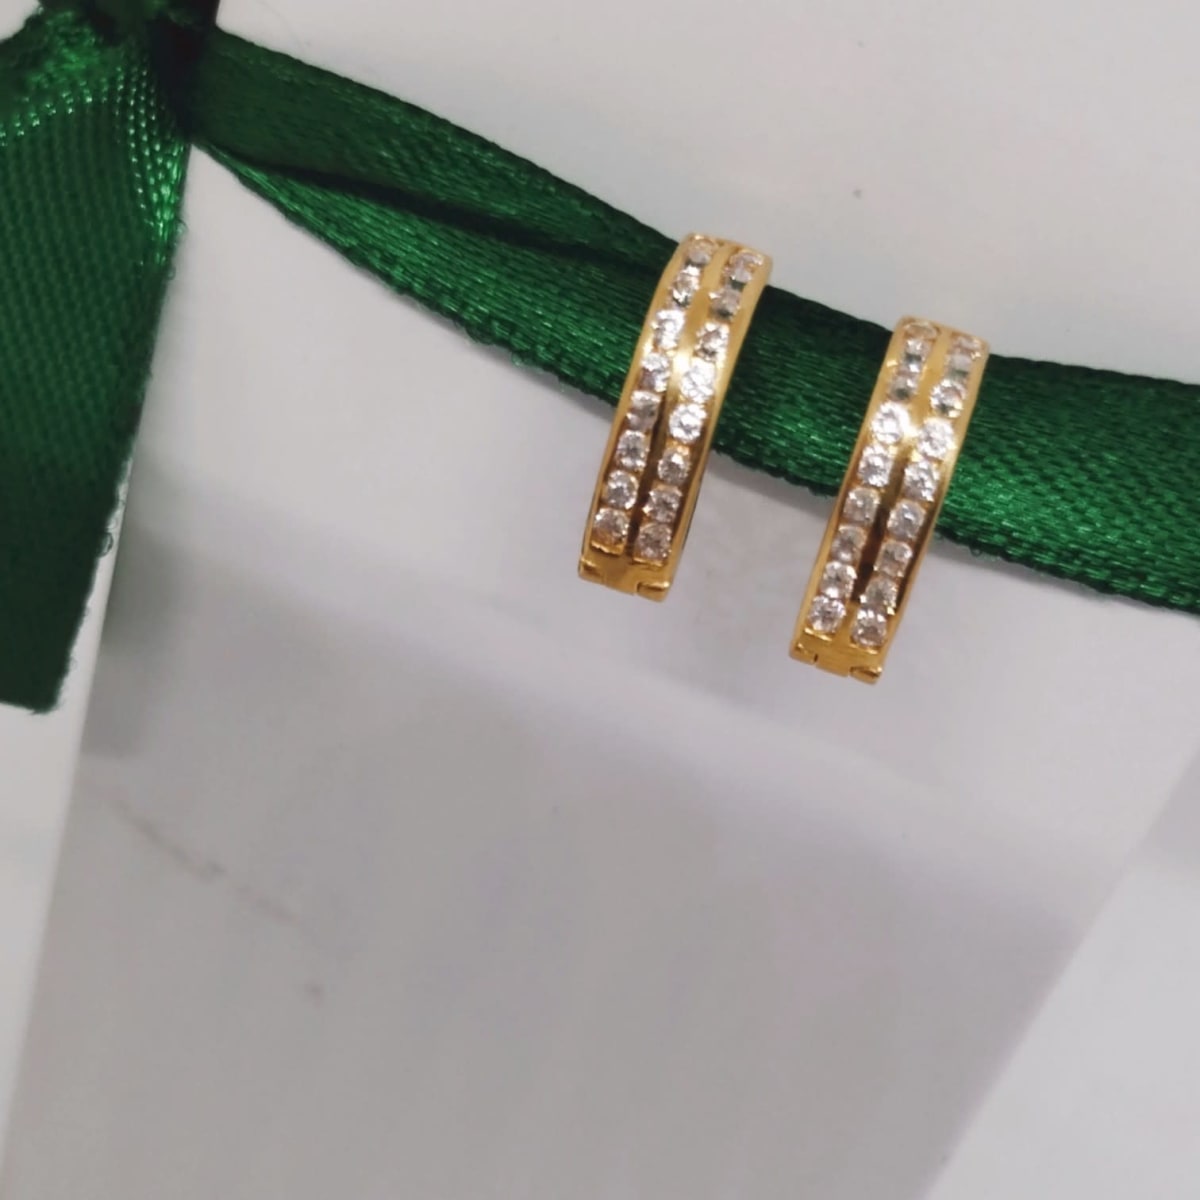 Buy Stone Rajkot Ring 3 Online | M G Jewellers - JewelFlix